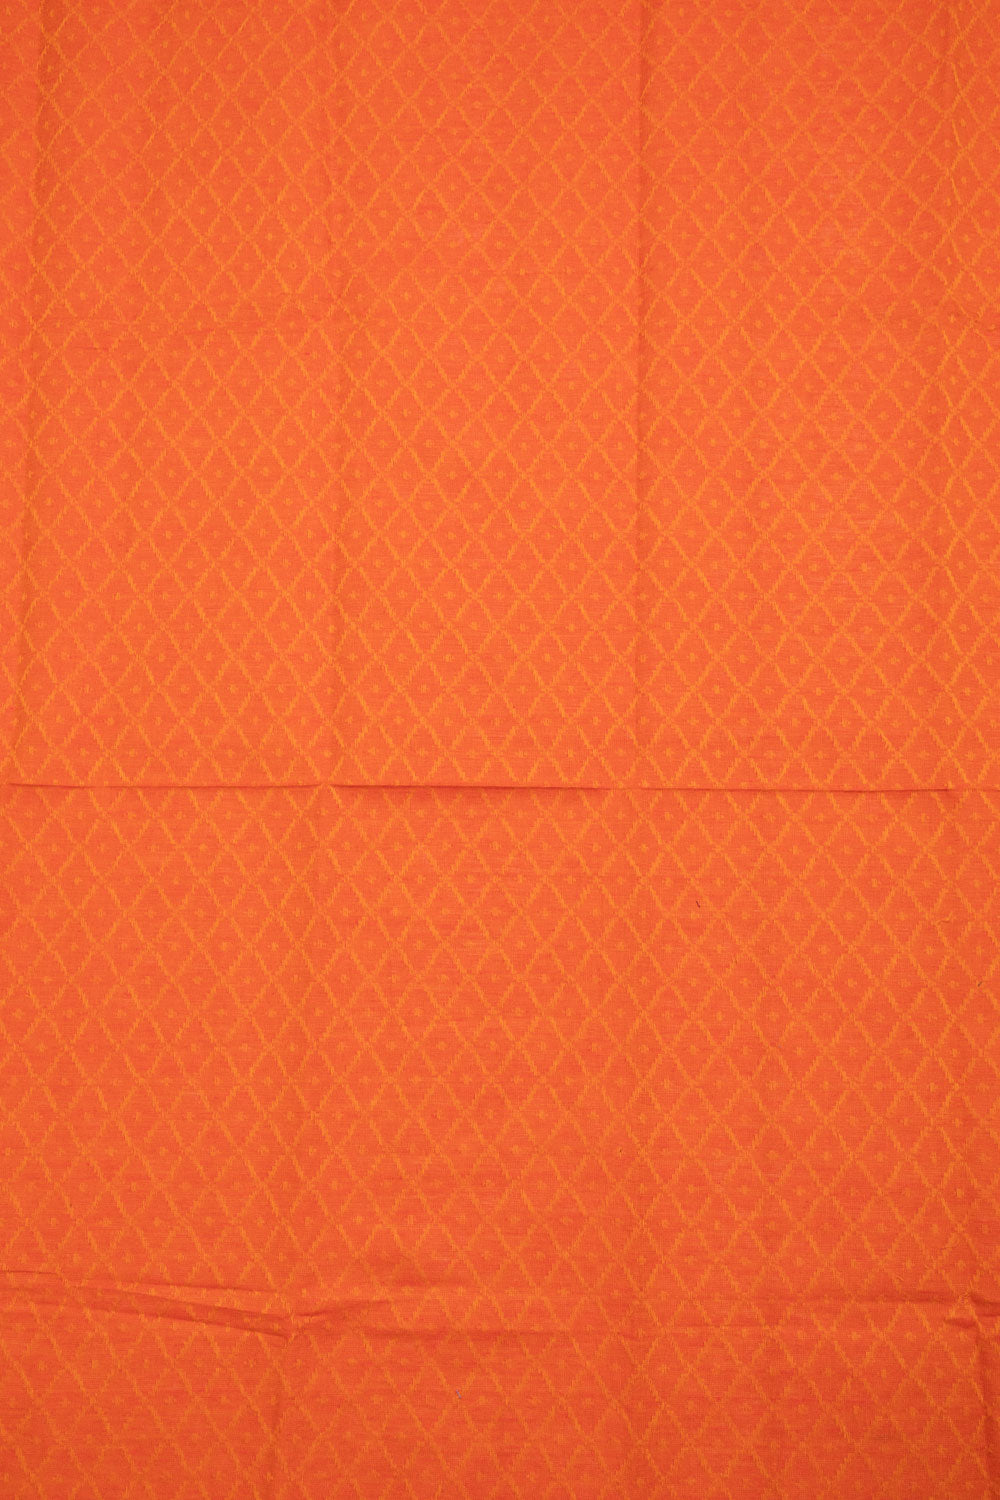 Dual Tone Purple Handloom Chettinad Cotton Saree 10070084 - Avishya